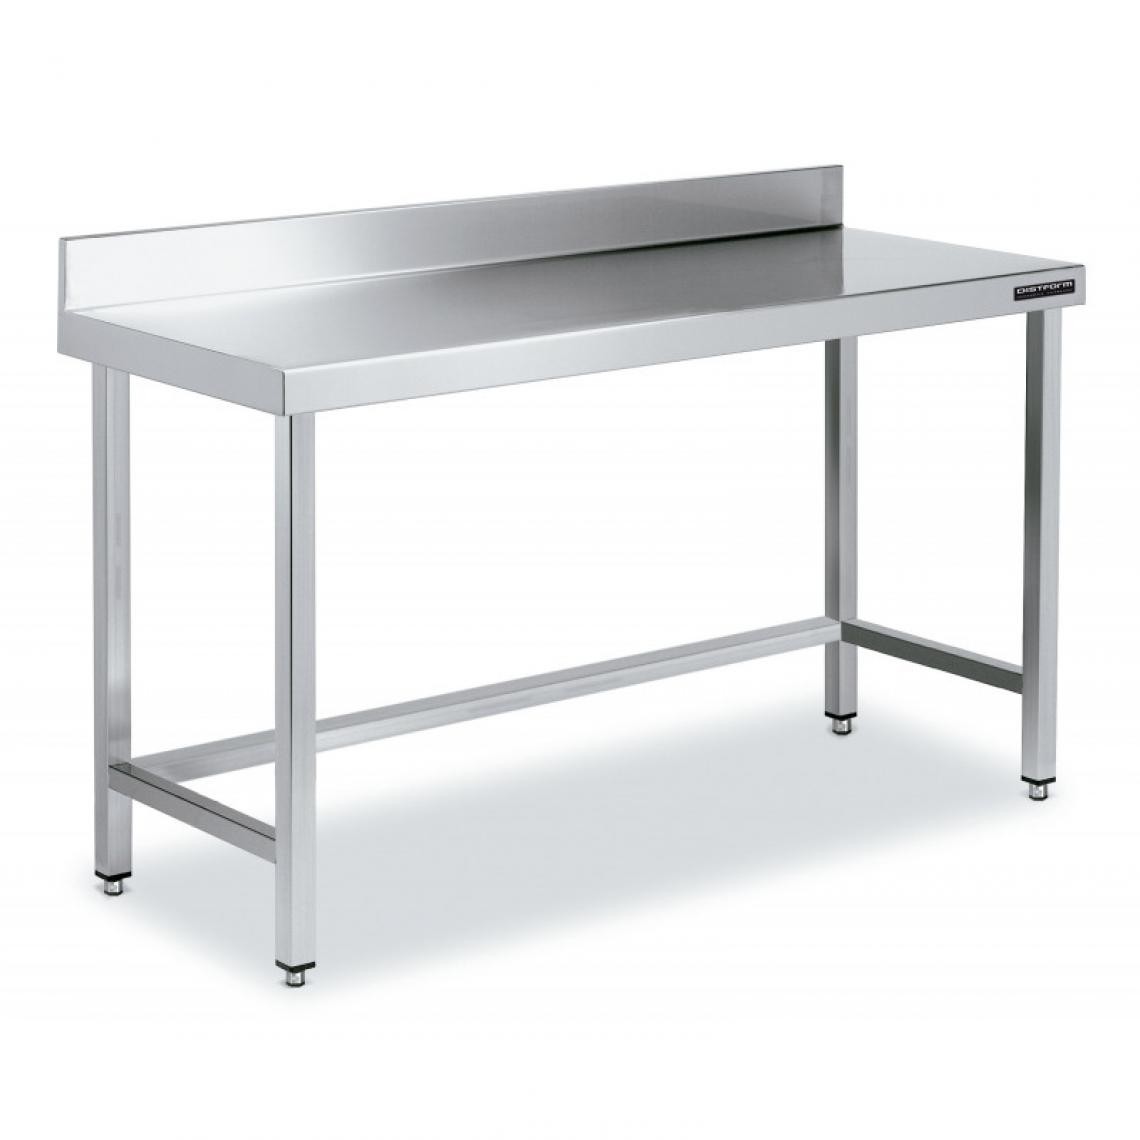 DISTFORM - Table de Travail Adossée Inox avec Renforts - Gamme 600 - Hauteur 600 - Distform - Acier inoxydable1000x600 - Tables à manger